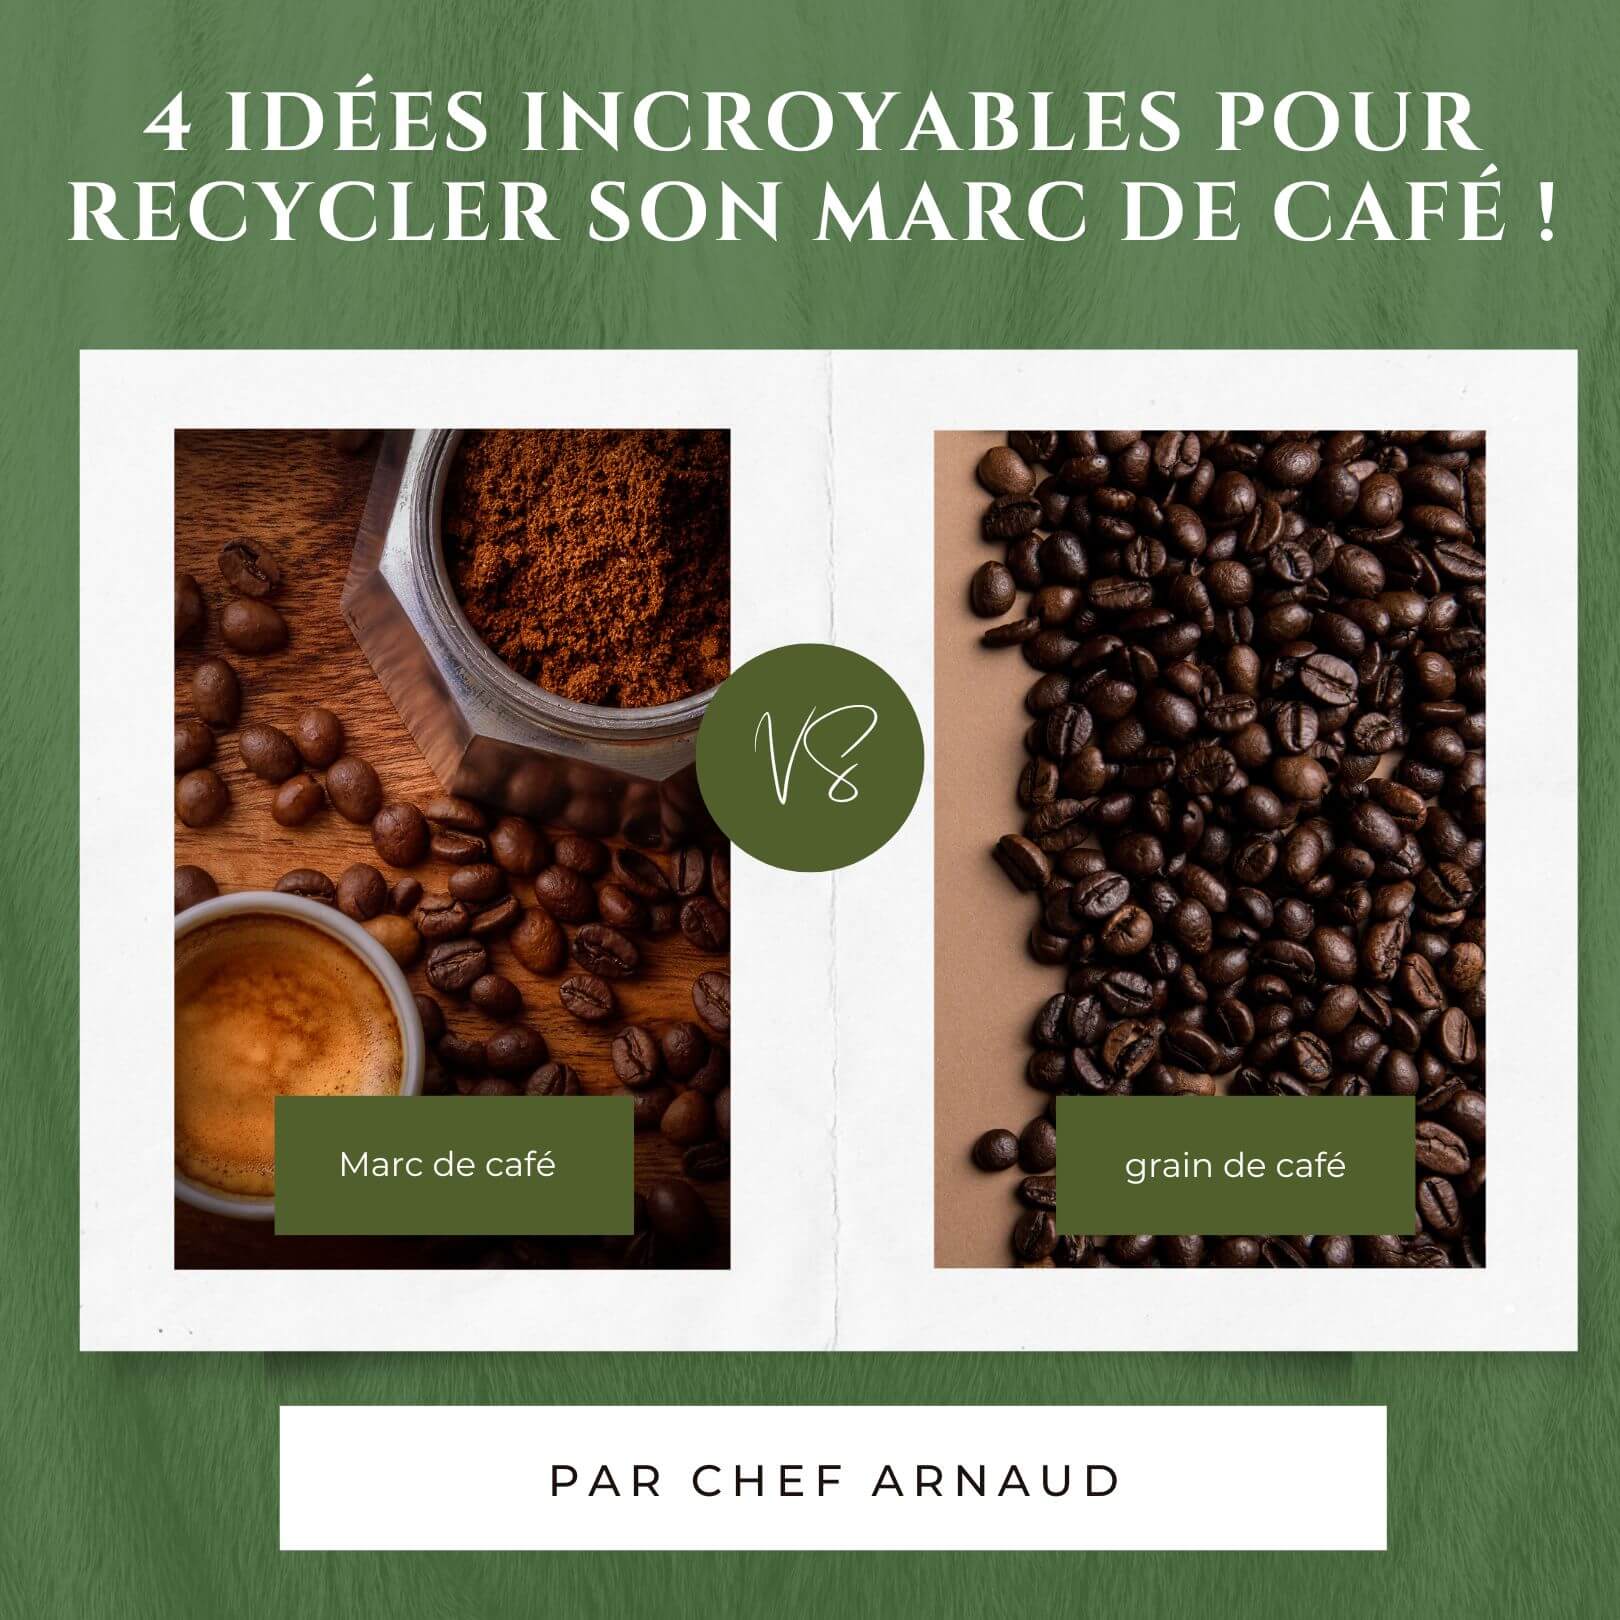 4 idées incroyables pour recycler son marc de café !